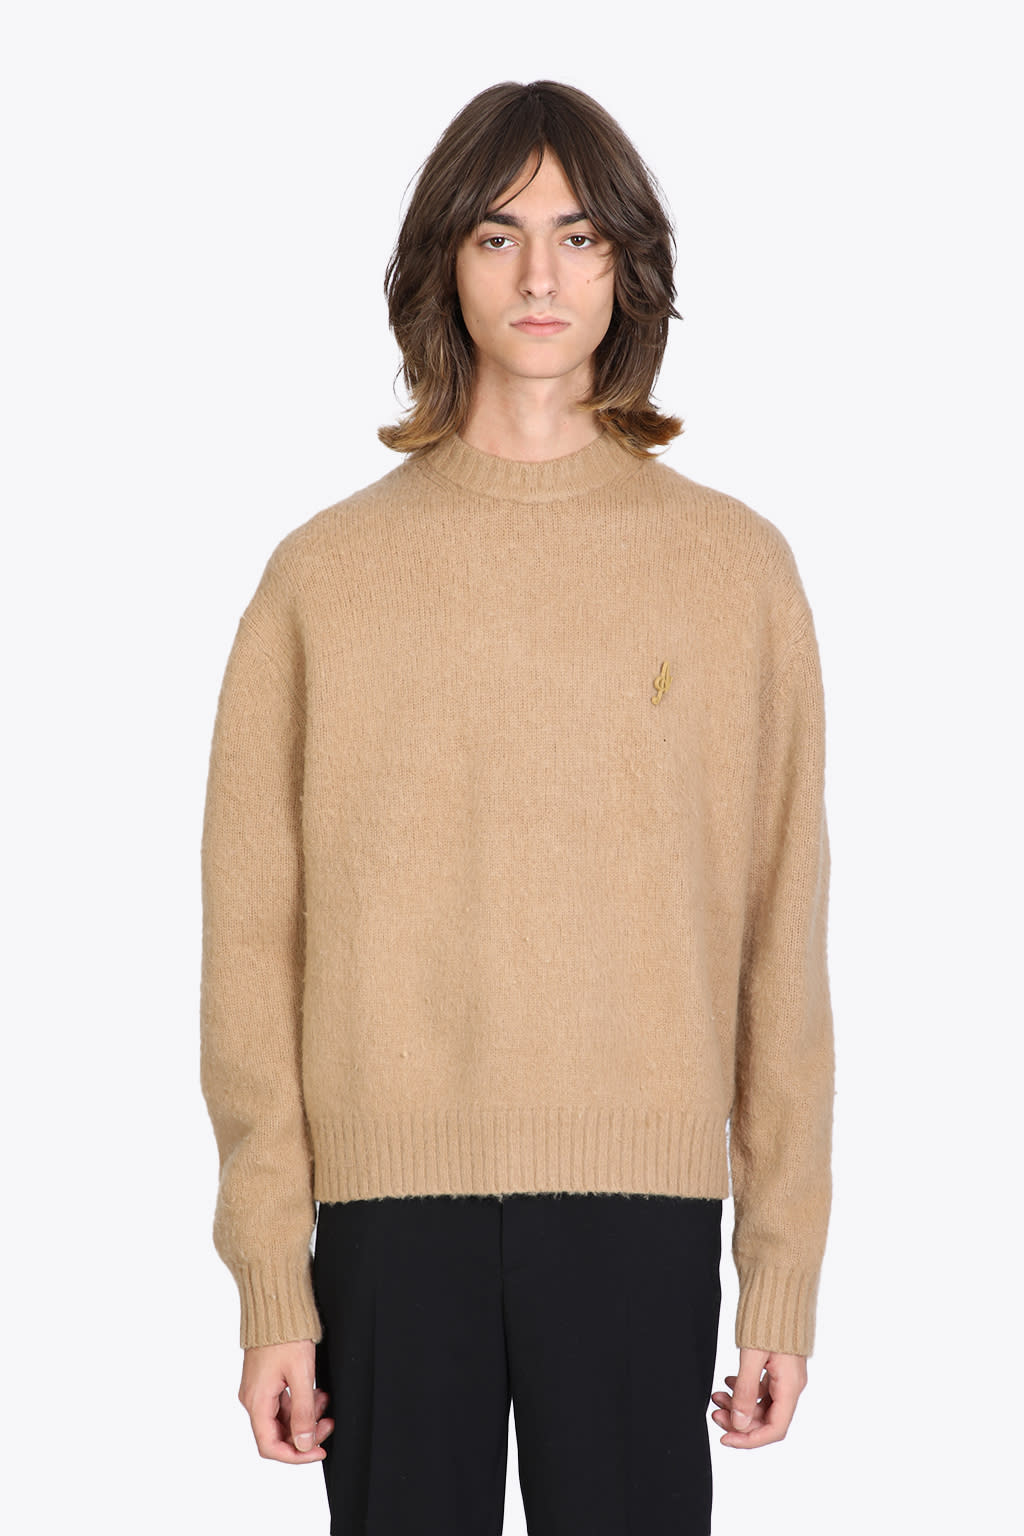 Axel Arigato Pin Sweater Camel beige wool sweater - Pin sweater